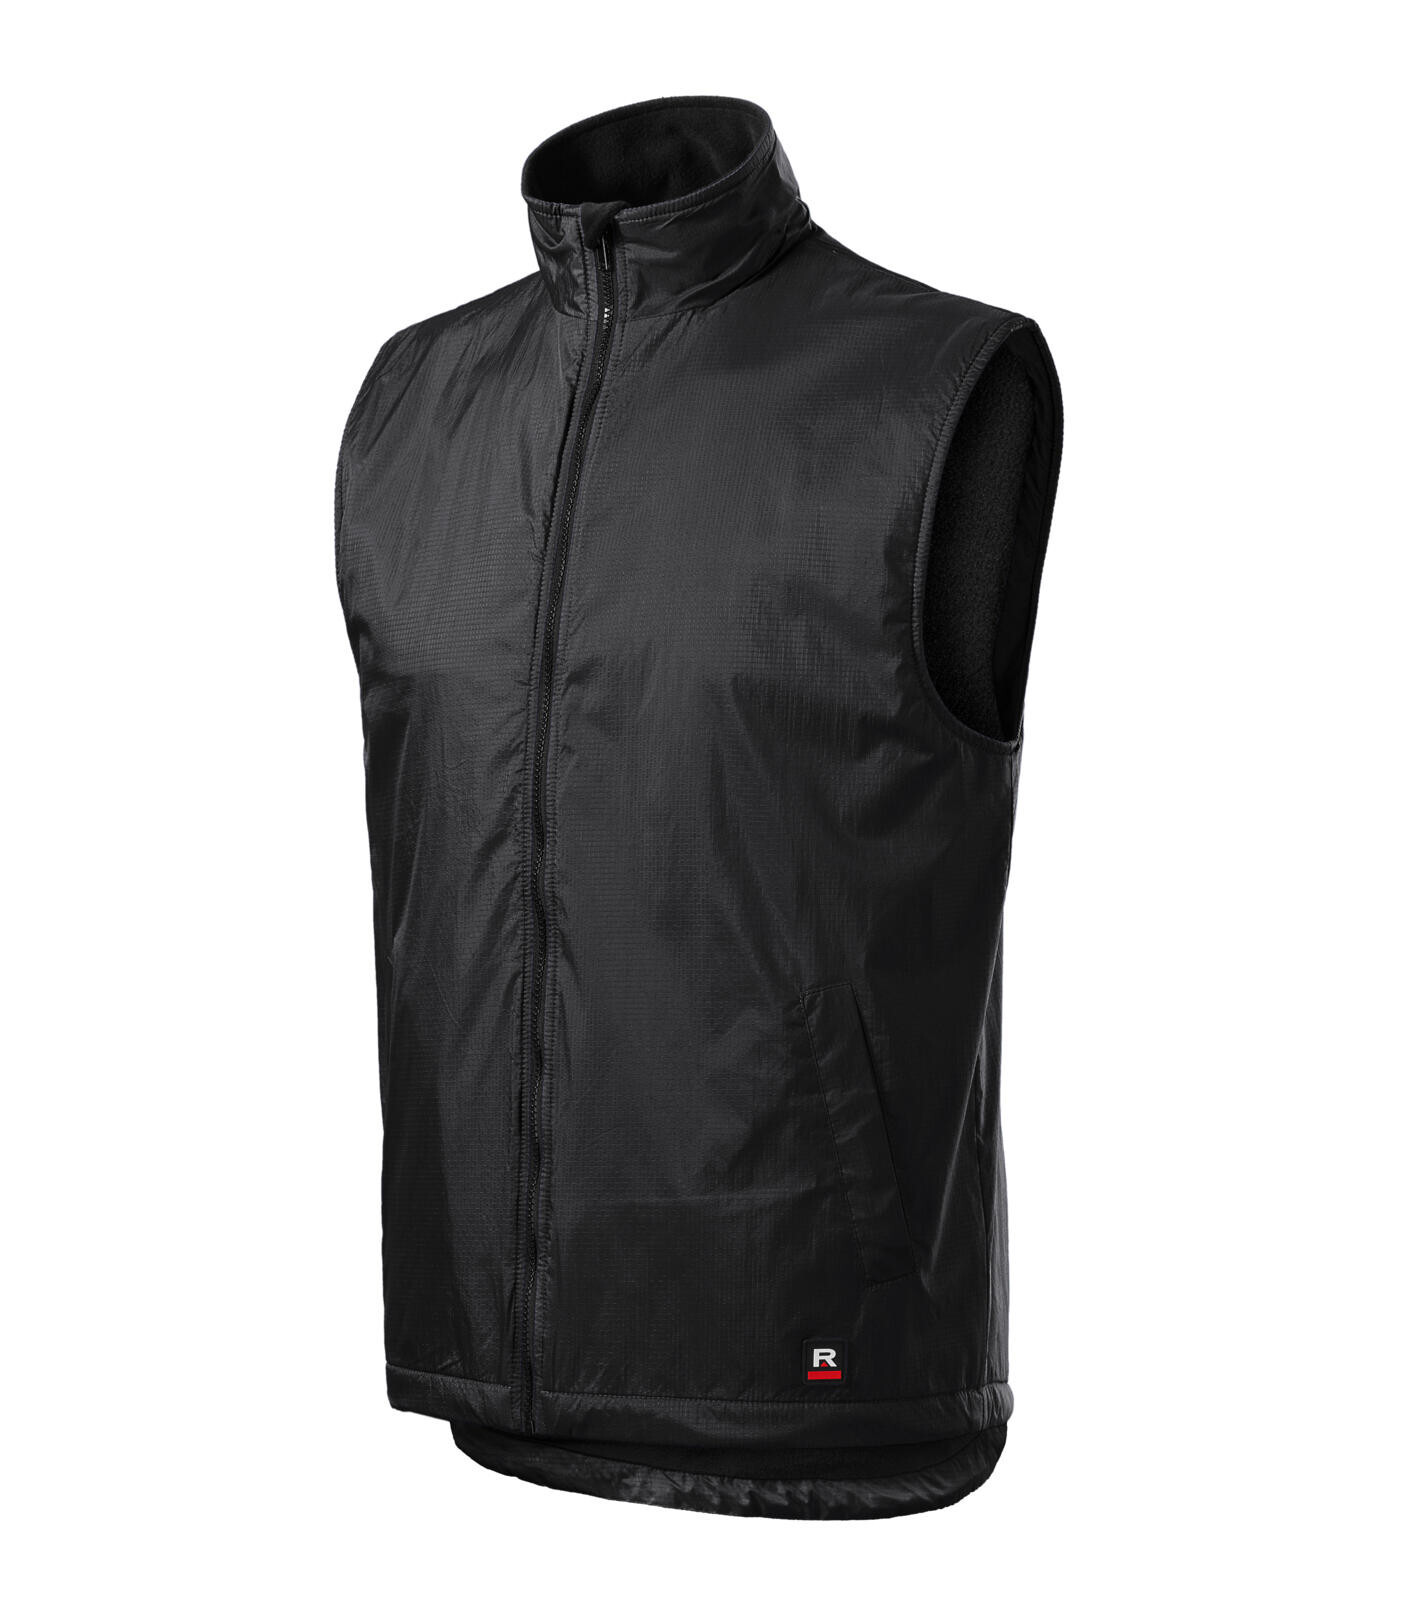 Unisex zateplená vesta Rimeck Body Warmer 509 - veľkosť: XL, farba: ebony grey